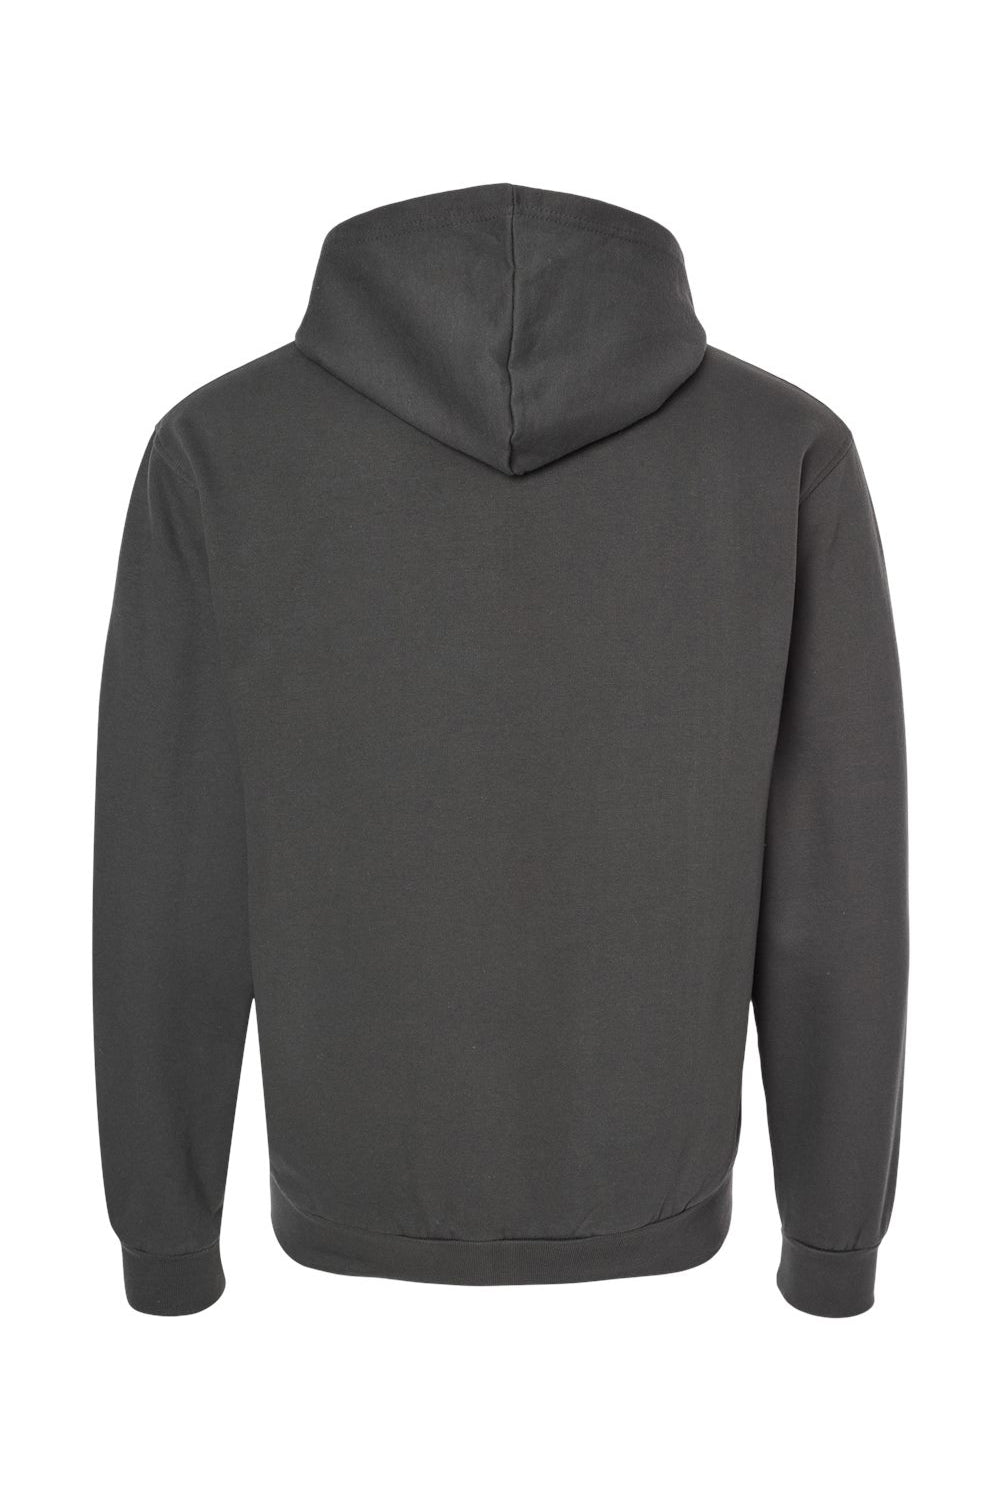 Tultex 331 Mens Full Zip Hooded Sweatshirt Hoodie Charcoal Grey Flat Back